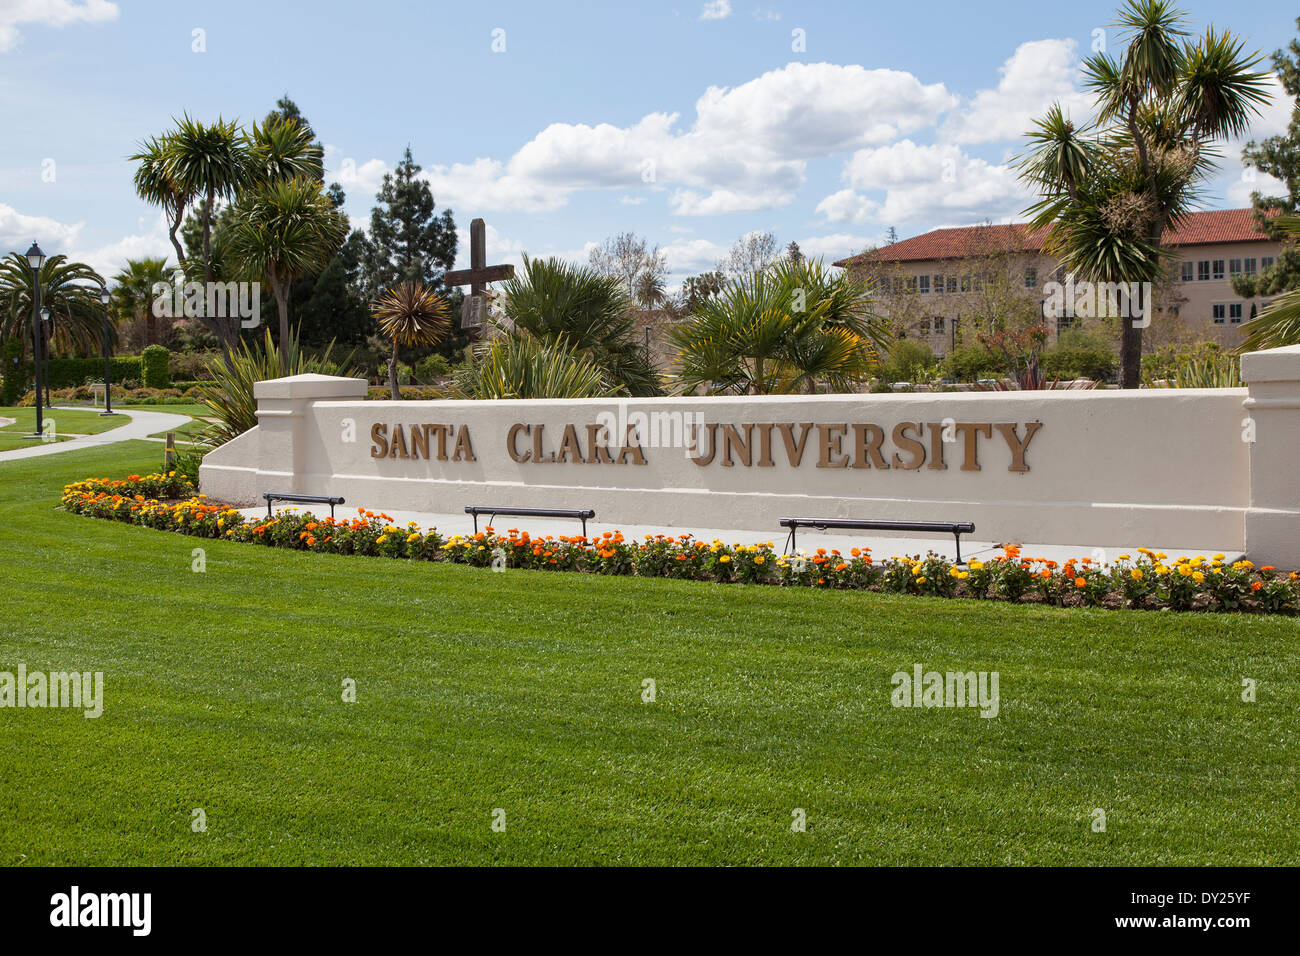 The main entry monument to Santa Clara University Stock Photo Alamy